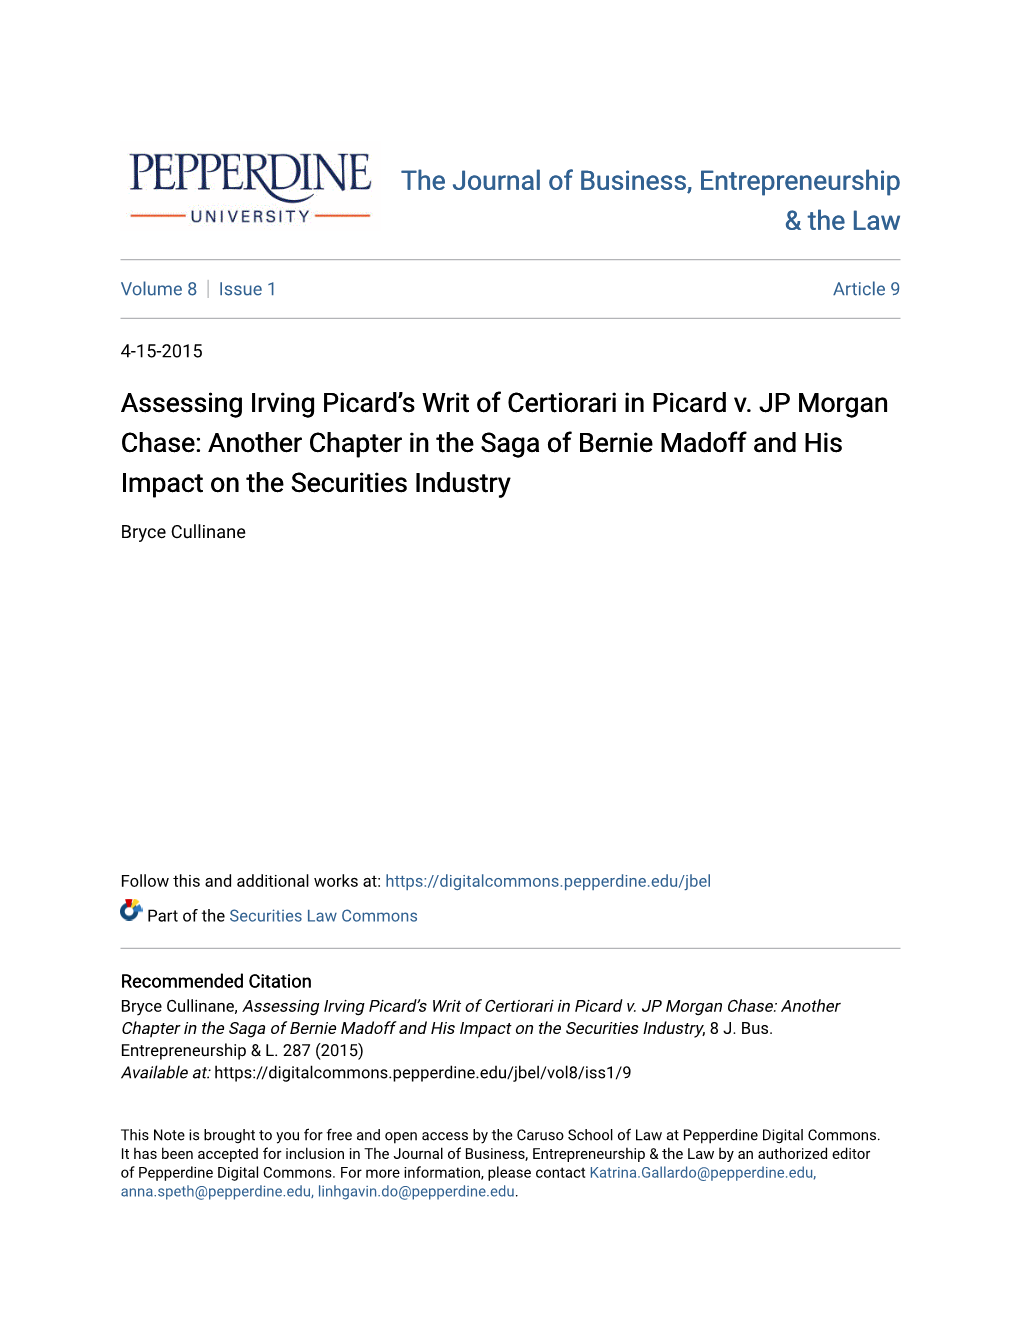 Assessing Irving Picard's Writ of Certiorari in Picard V. JP Morgan Chase